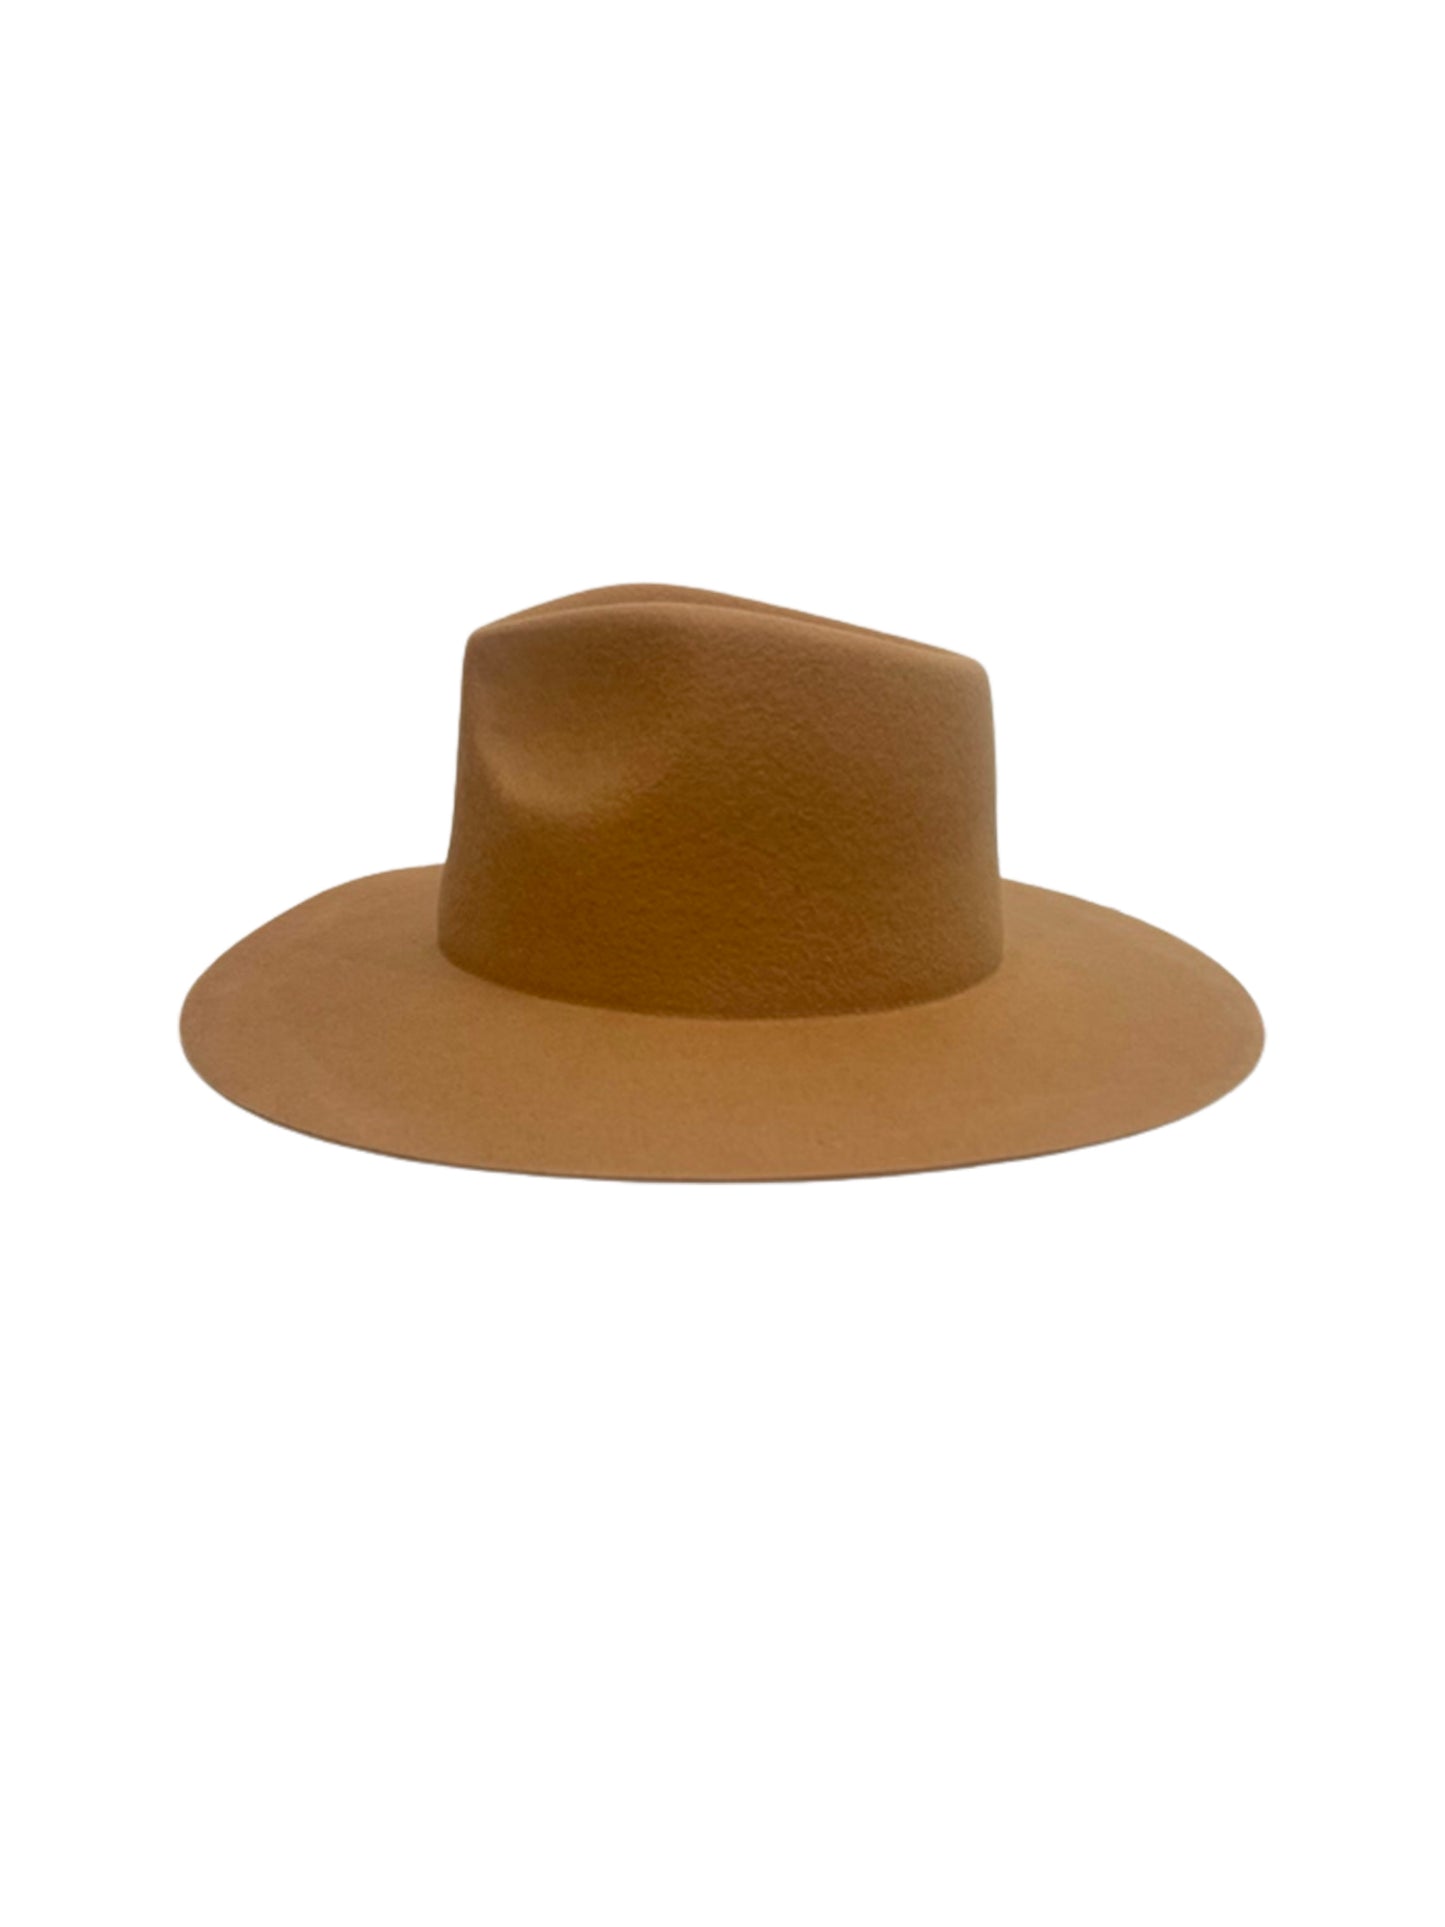 rancher hat camel side